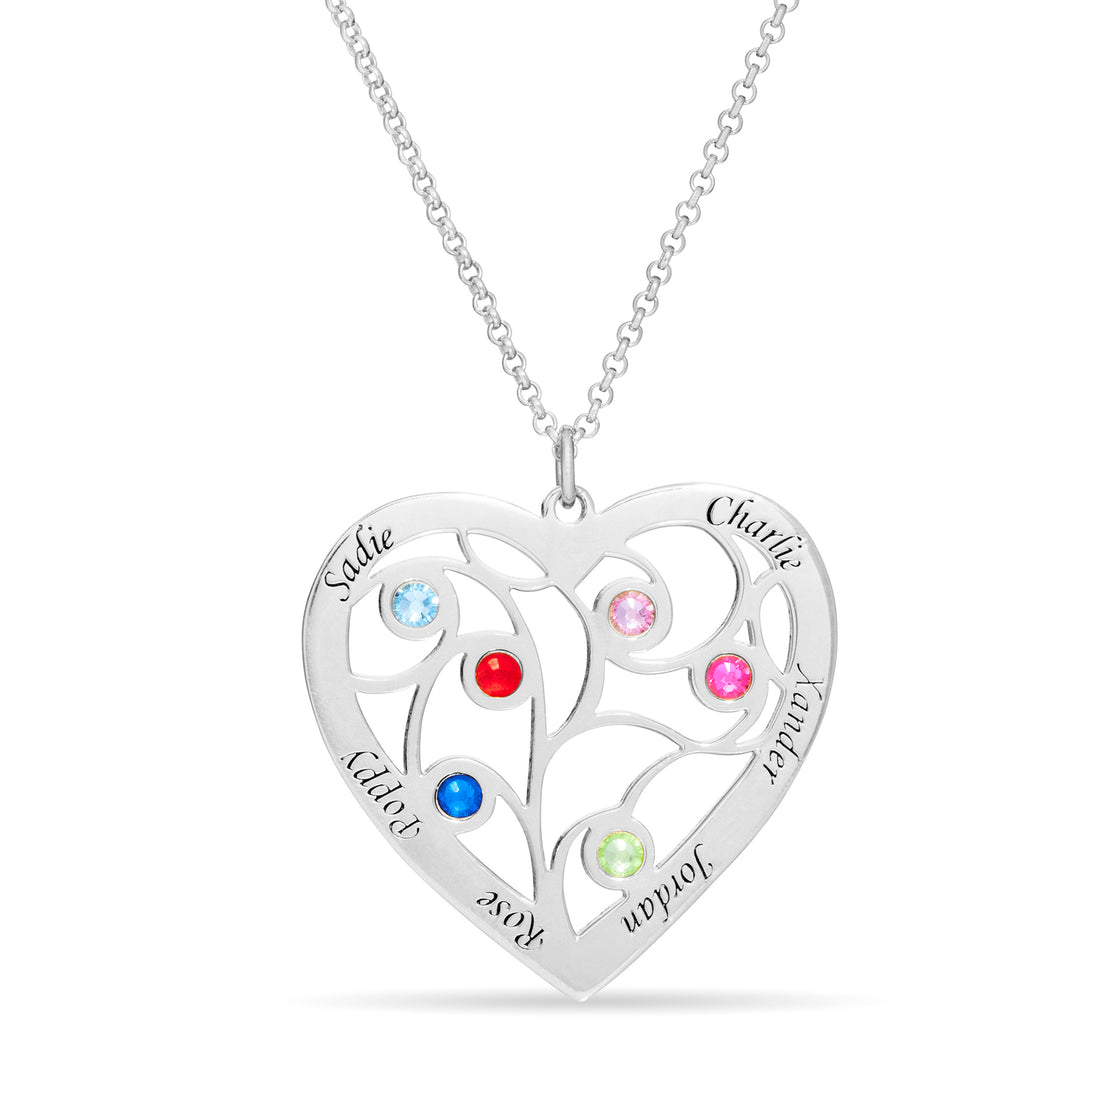 Family Tree Heart Necklace